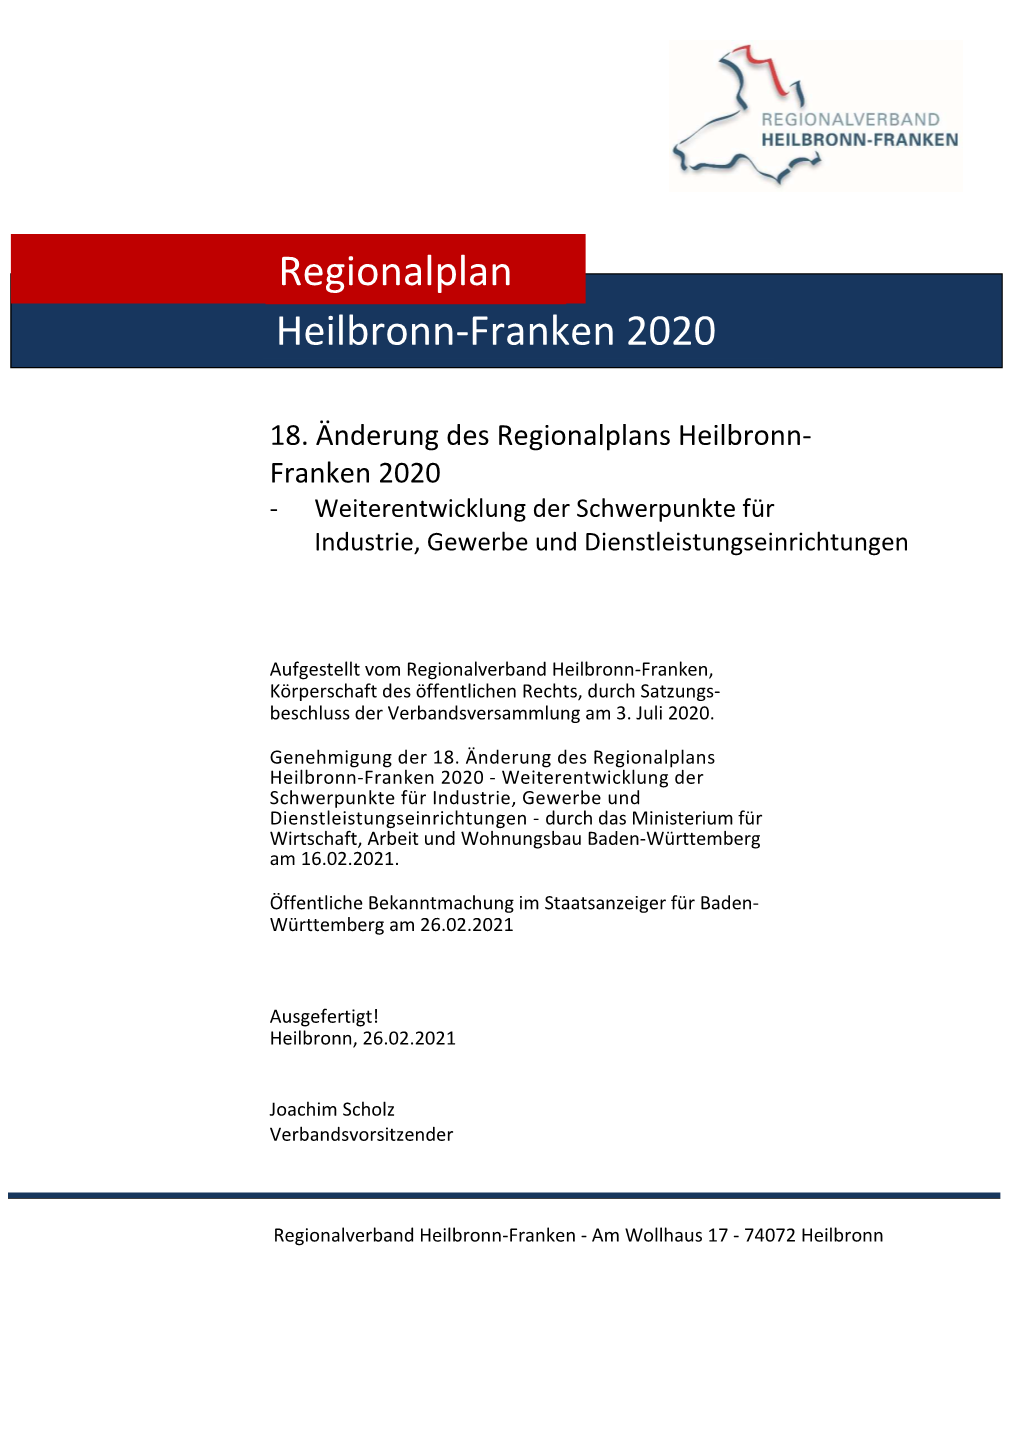 Heilbronn-Franken 2020 Regionalplan